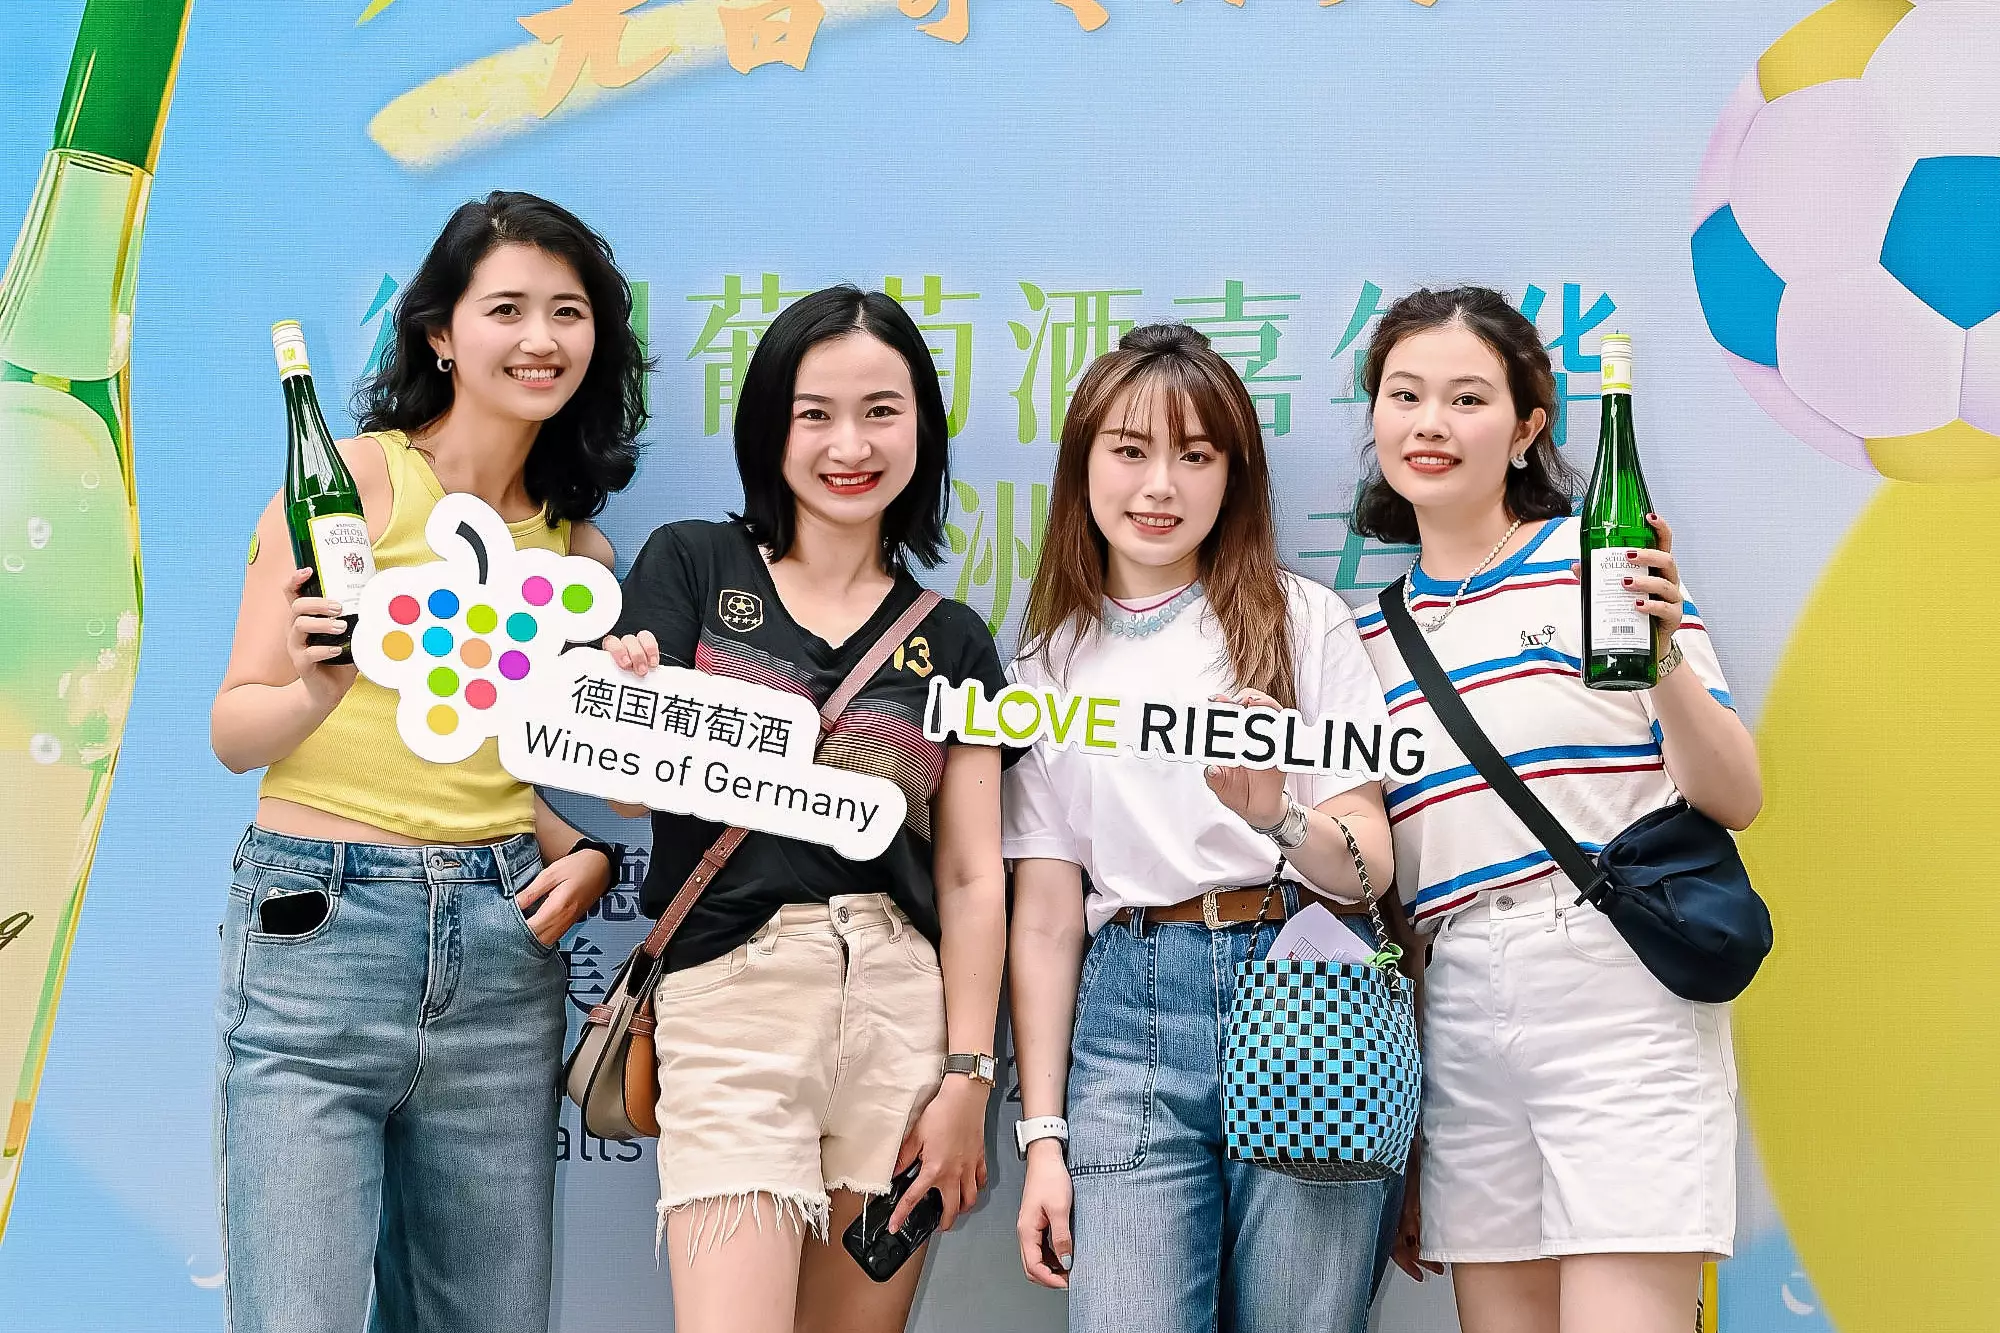 Durch die Veranstaltung von "Summer of Riesling" - Partys in ganz China bringt die Initiative den chinesischen Verbrauchern die köstlichen Erlebnisse näher, die deutsche Weine bieten, und schafft eine einzigartige Verbindung von Sommerfeeling und Weingenuss.